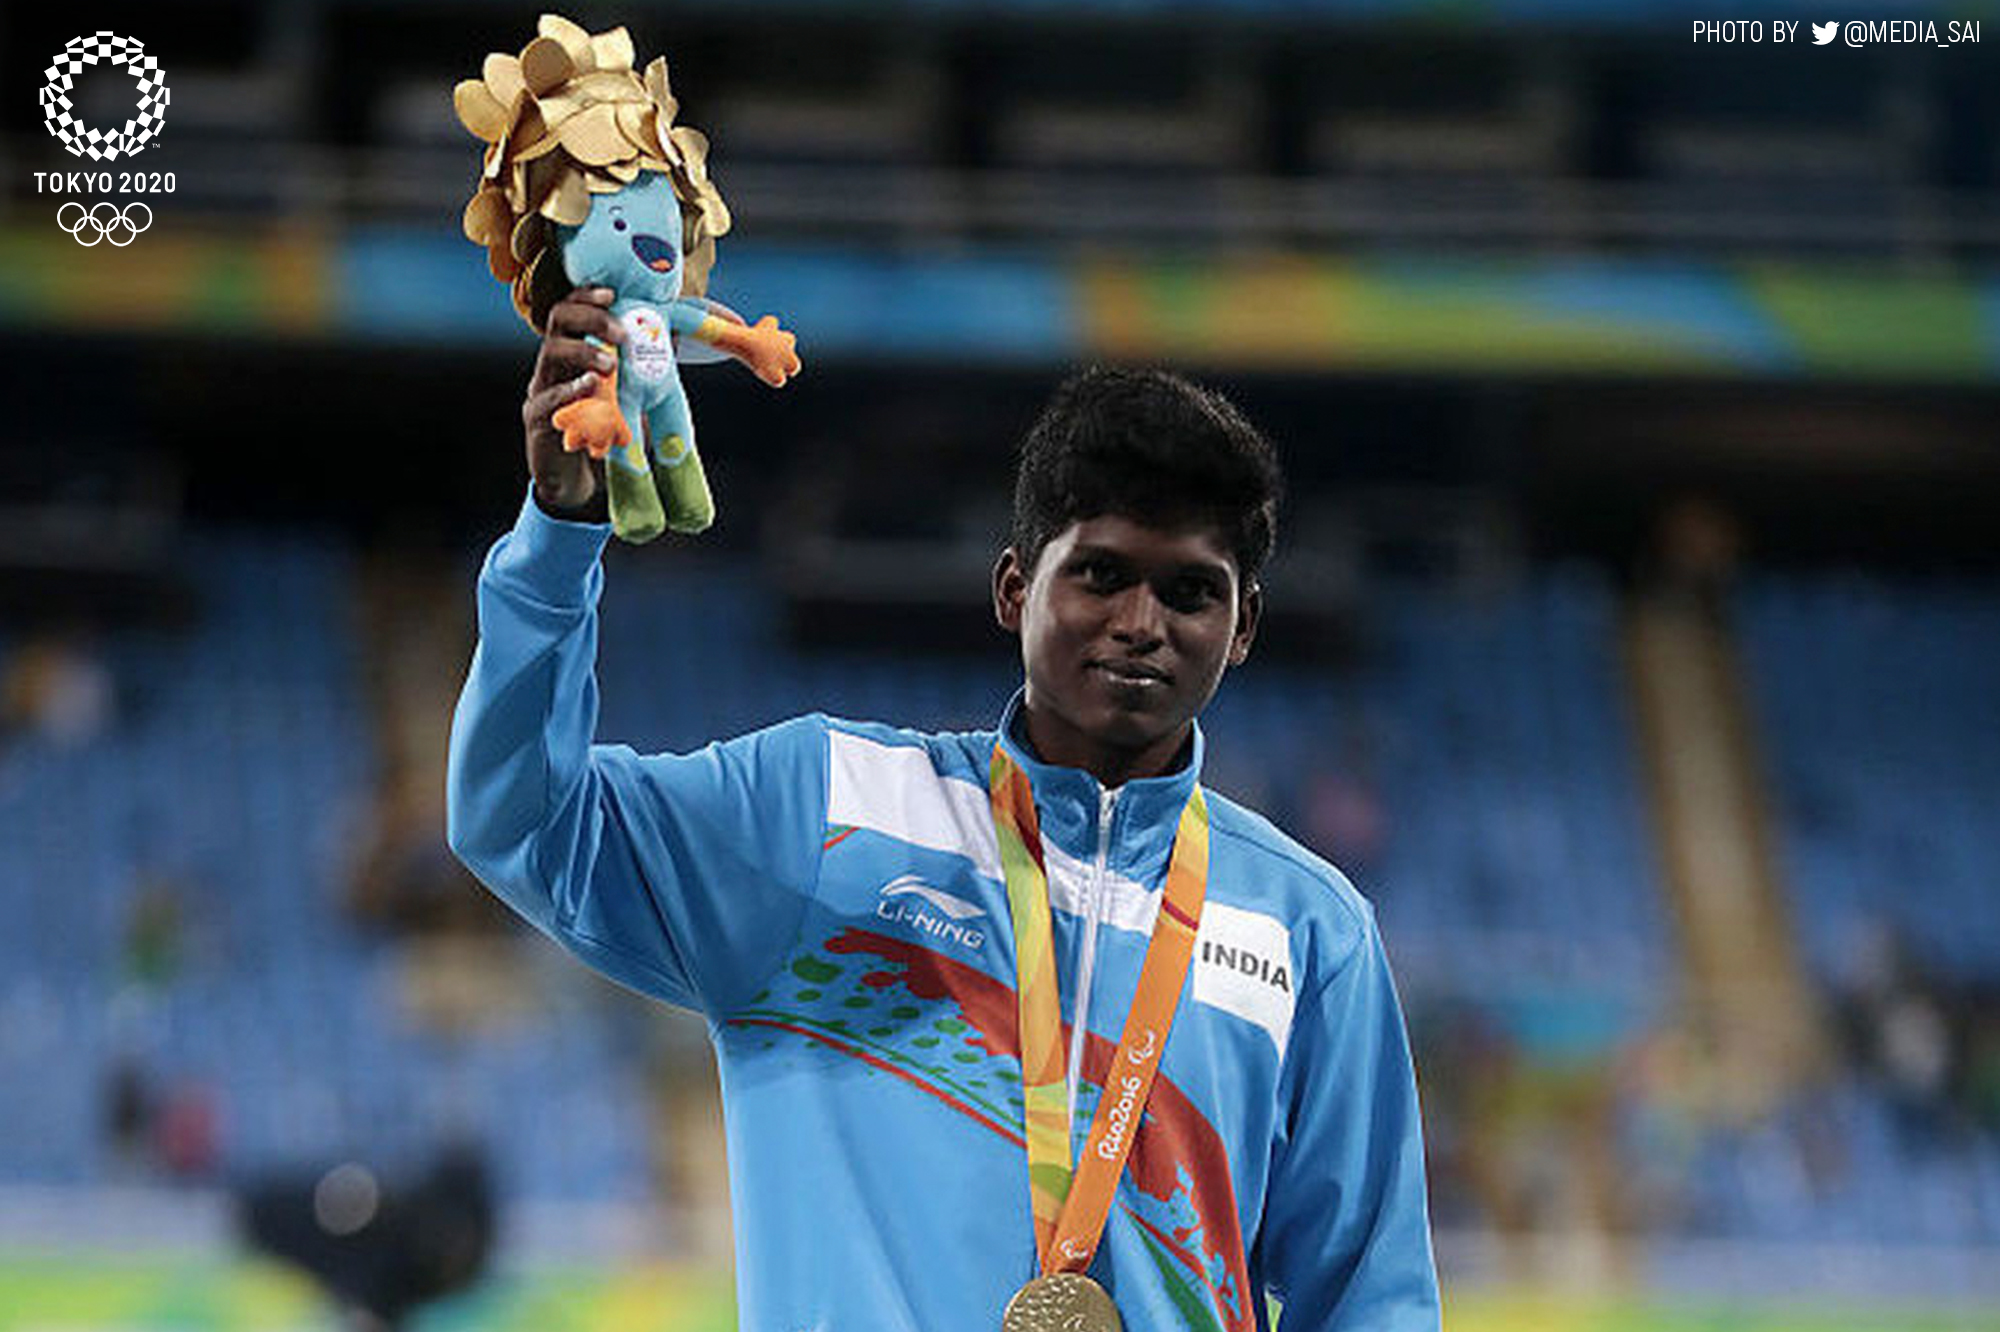 2020 Paralympics | Mariyappan Thangavelu claims silver in long jump, Sharad Kumar finishes third 